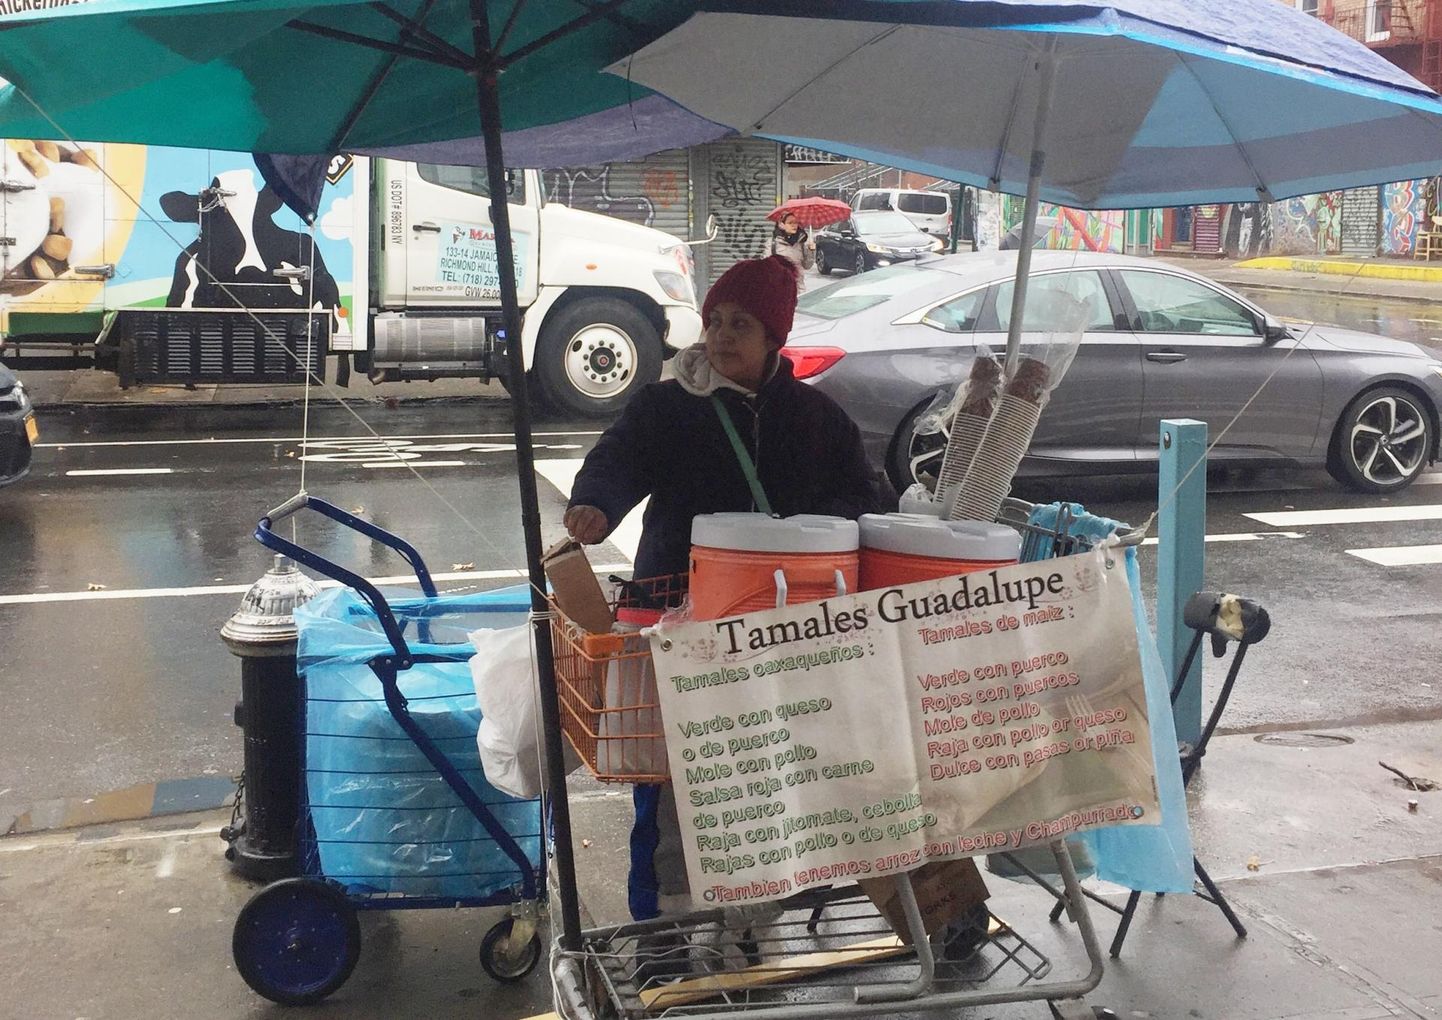 Mehhikost pärit Guadalupe Galicia on müünud tamale’sid New Yorgis Brooklyni linnaosas juba paarkümmend aastat. Luba tänavakaubitsemiseks on linnas aga saada äärmiselt keeruline, sest 10 000 kaupmeest võitlevad 2900 loa nimel.